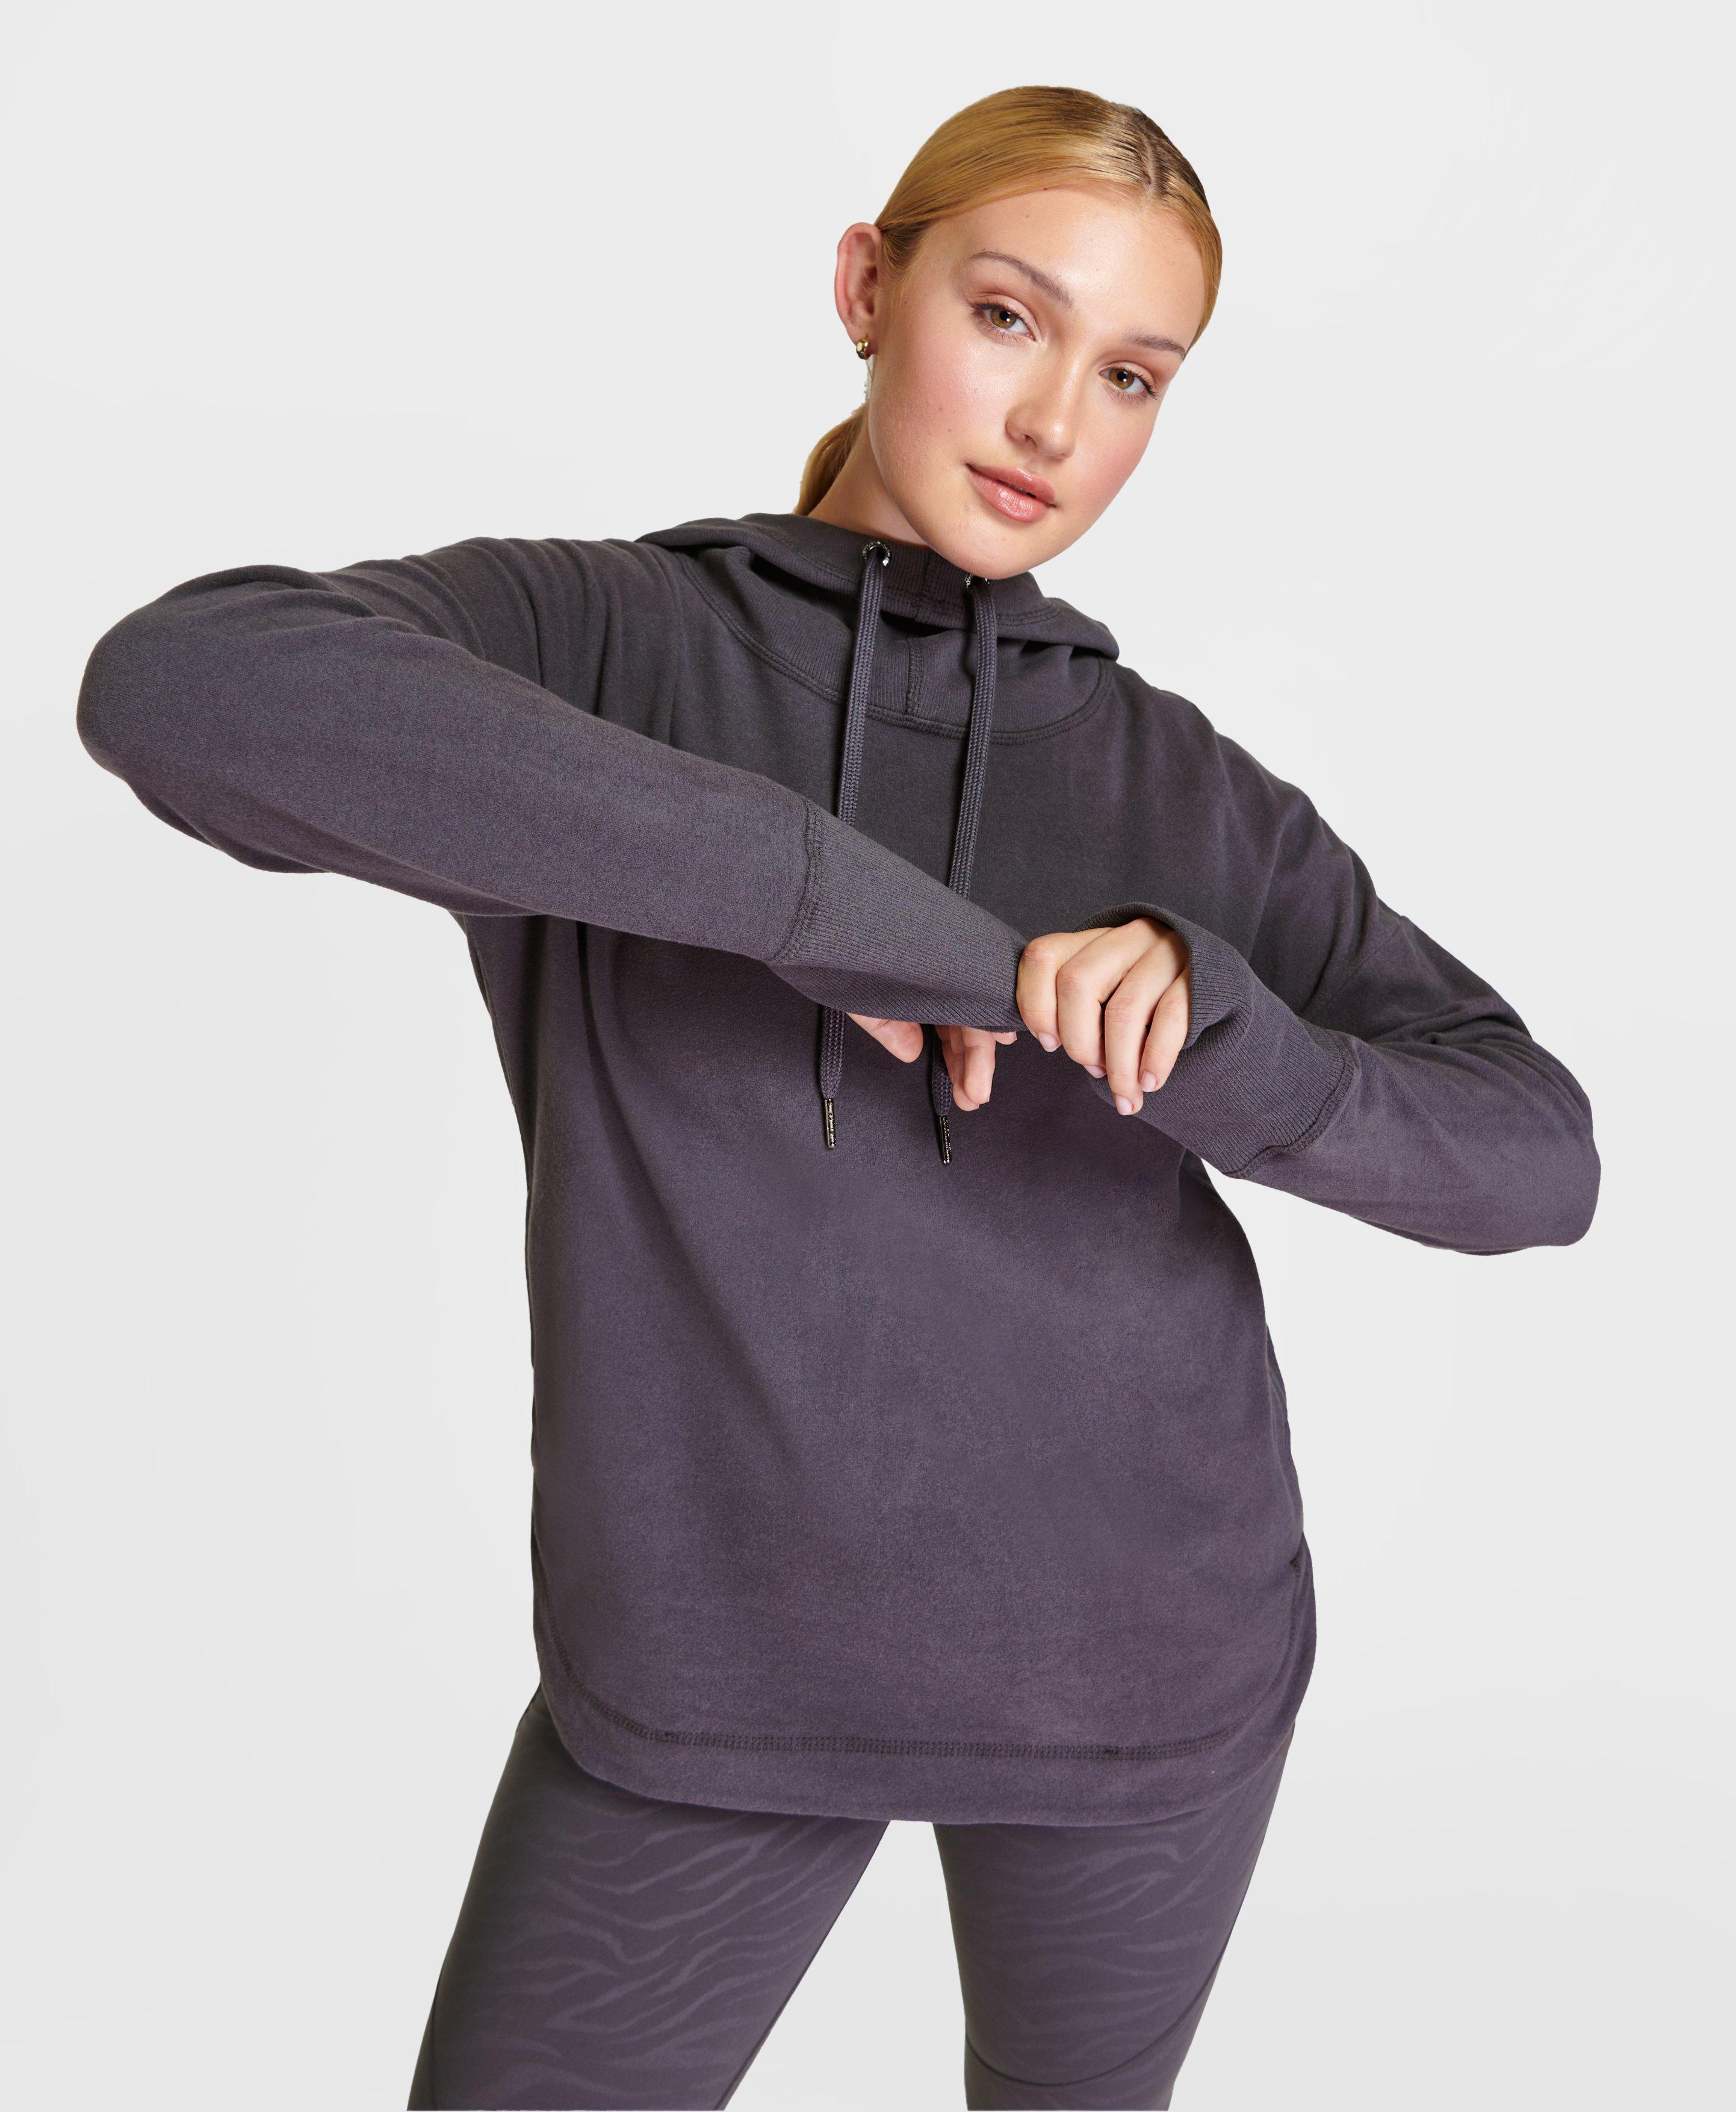 Women's Hoodies & Sweatshirts | Workout Shirts | Sweaty Betty